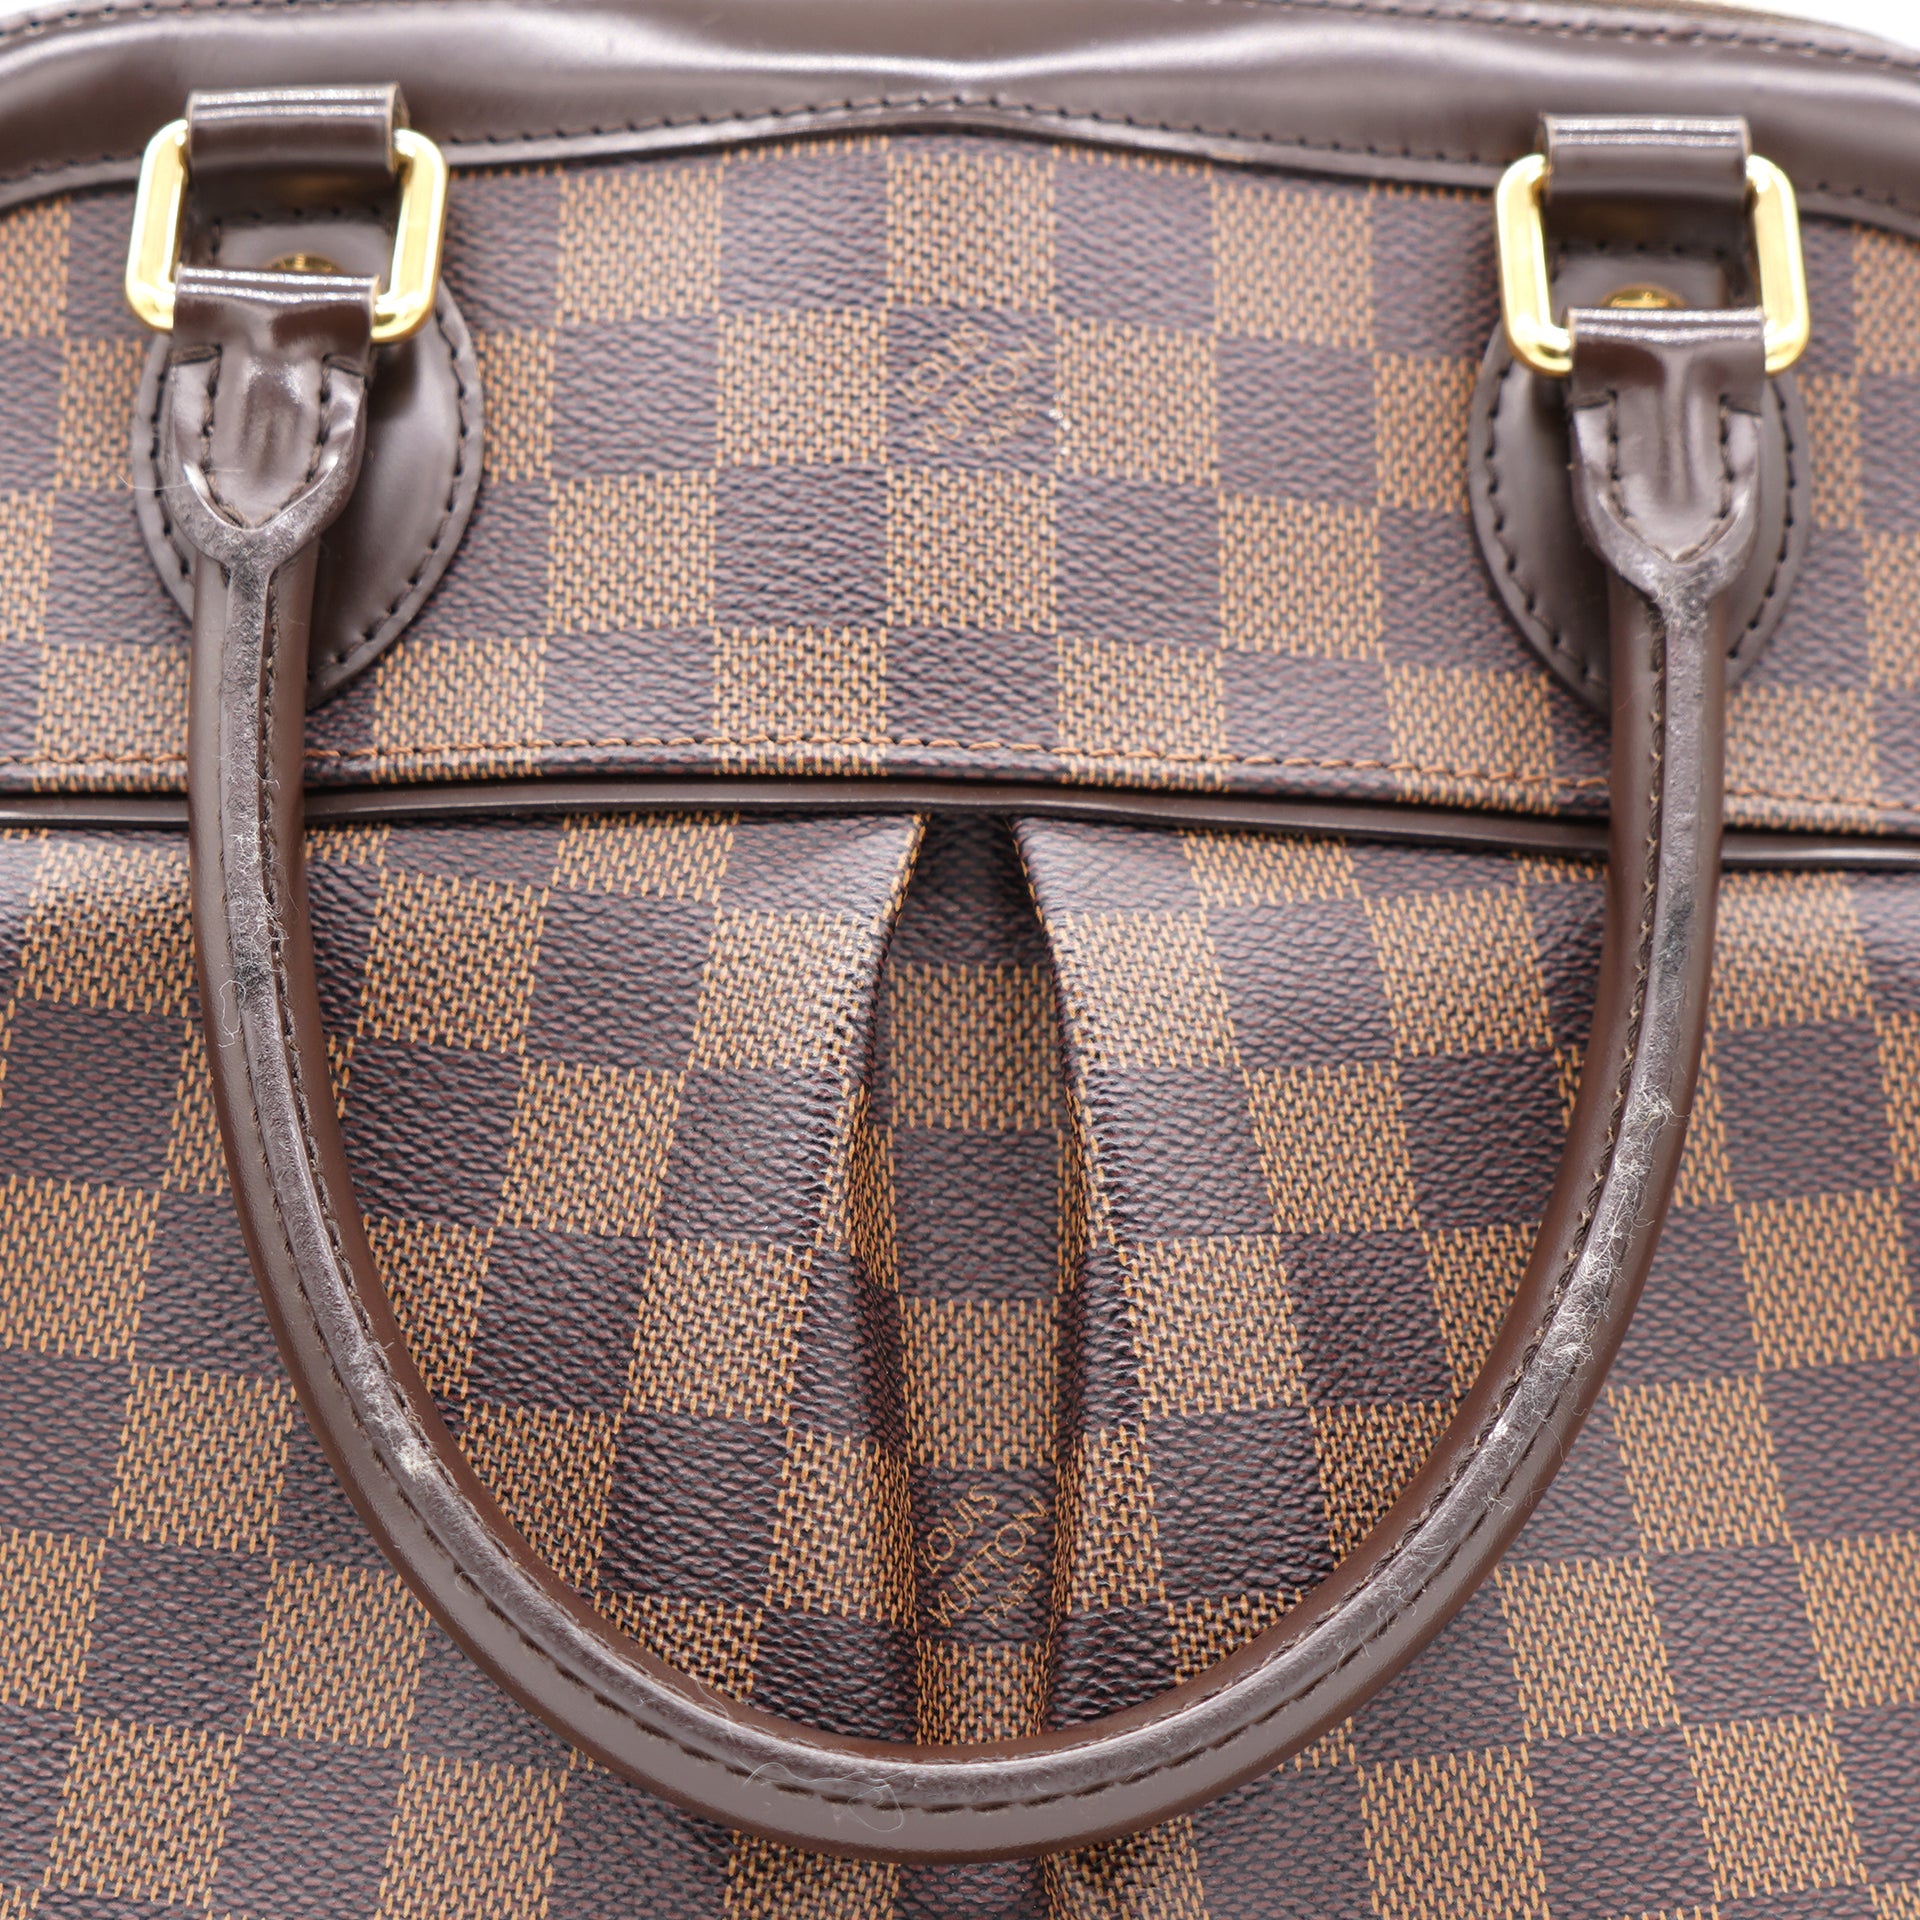 Authentic LOUIS VUITTON Trevi GM Shoulder Bag Handbag Damier